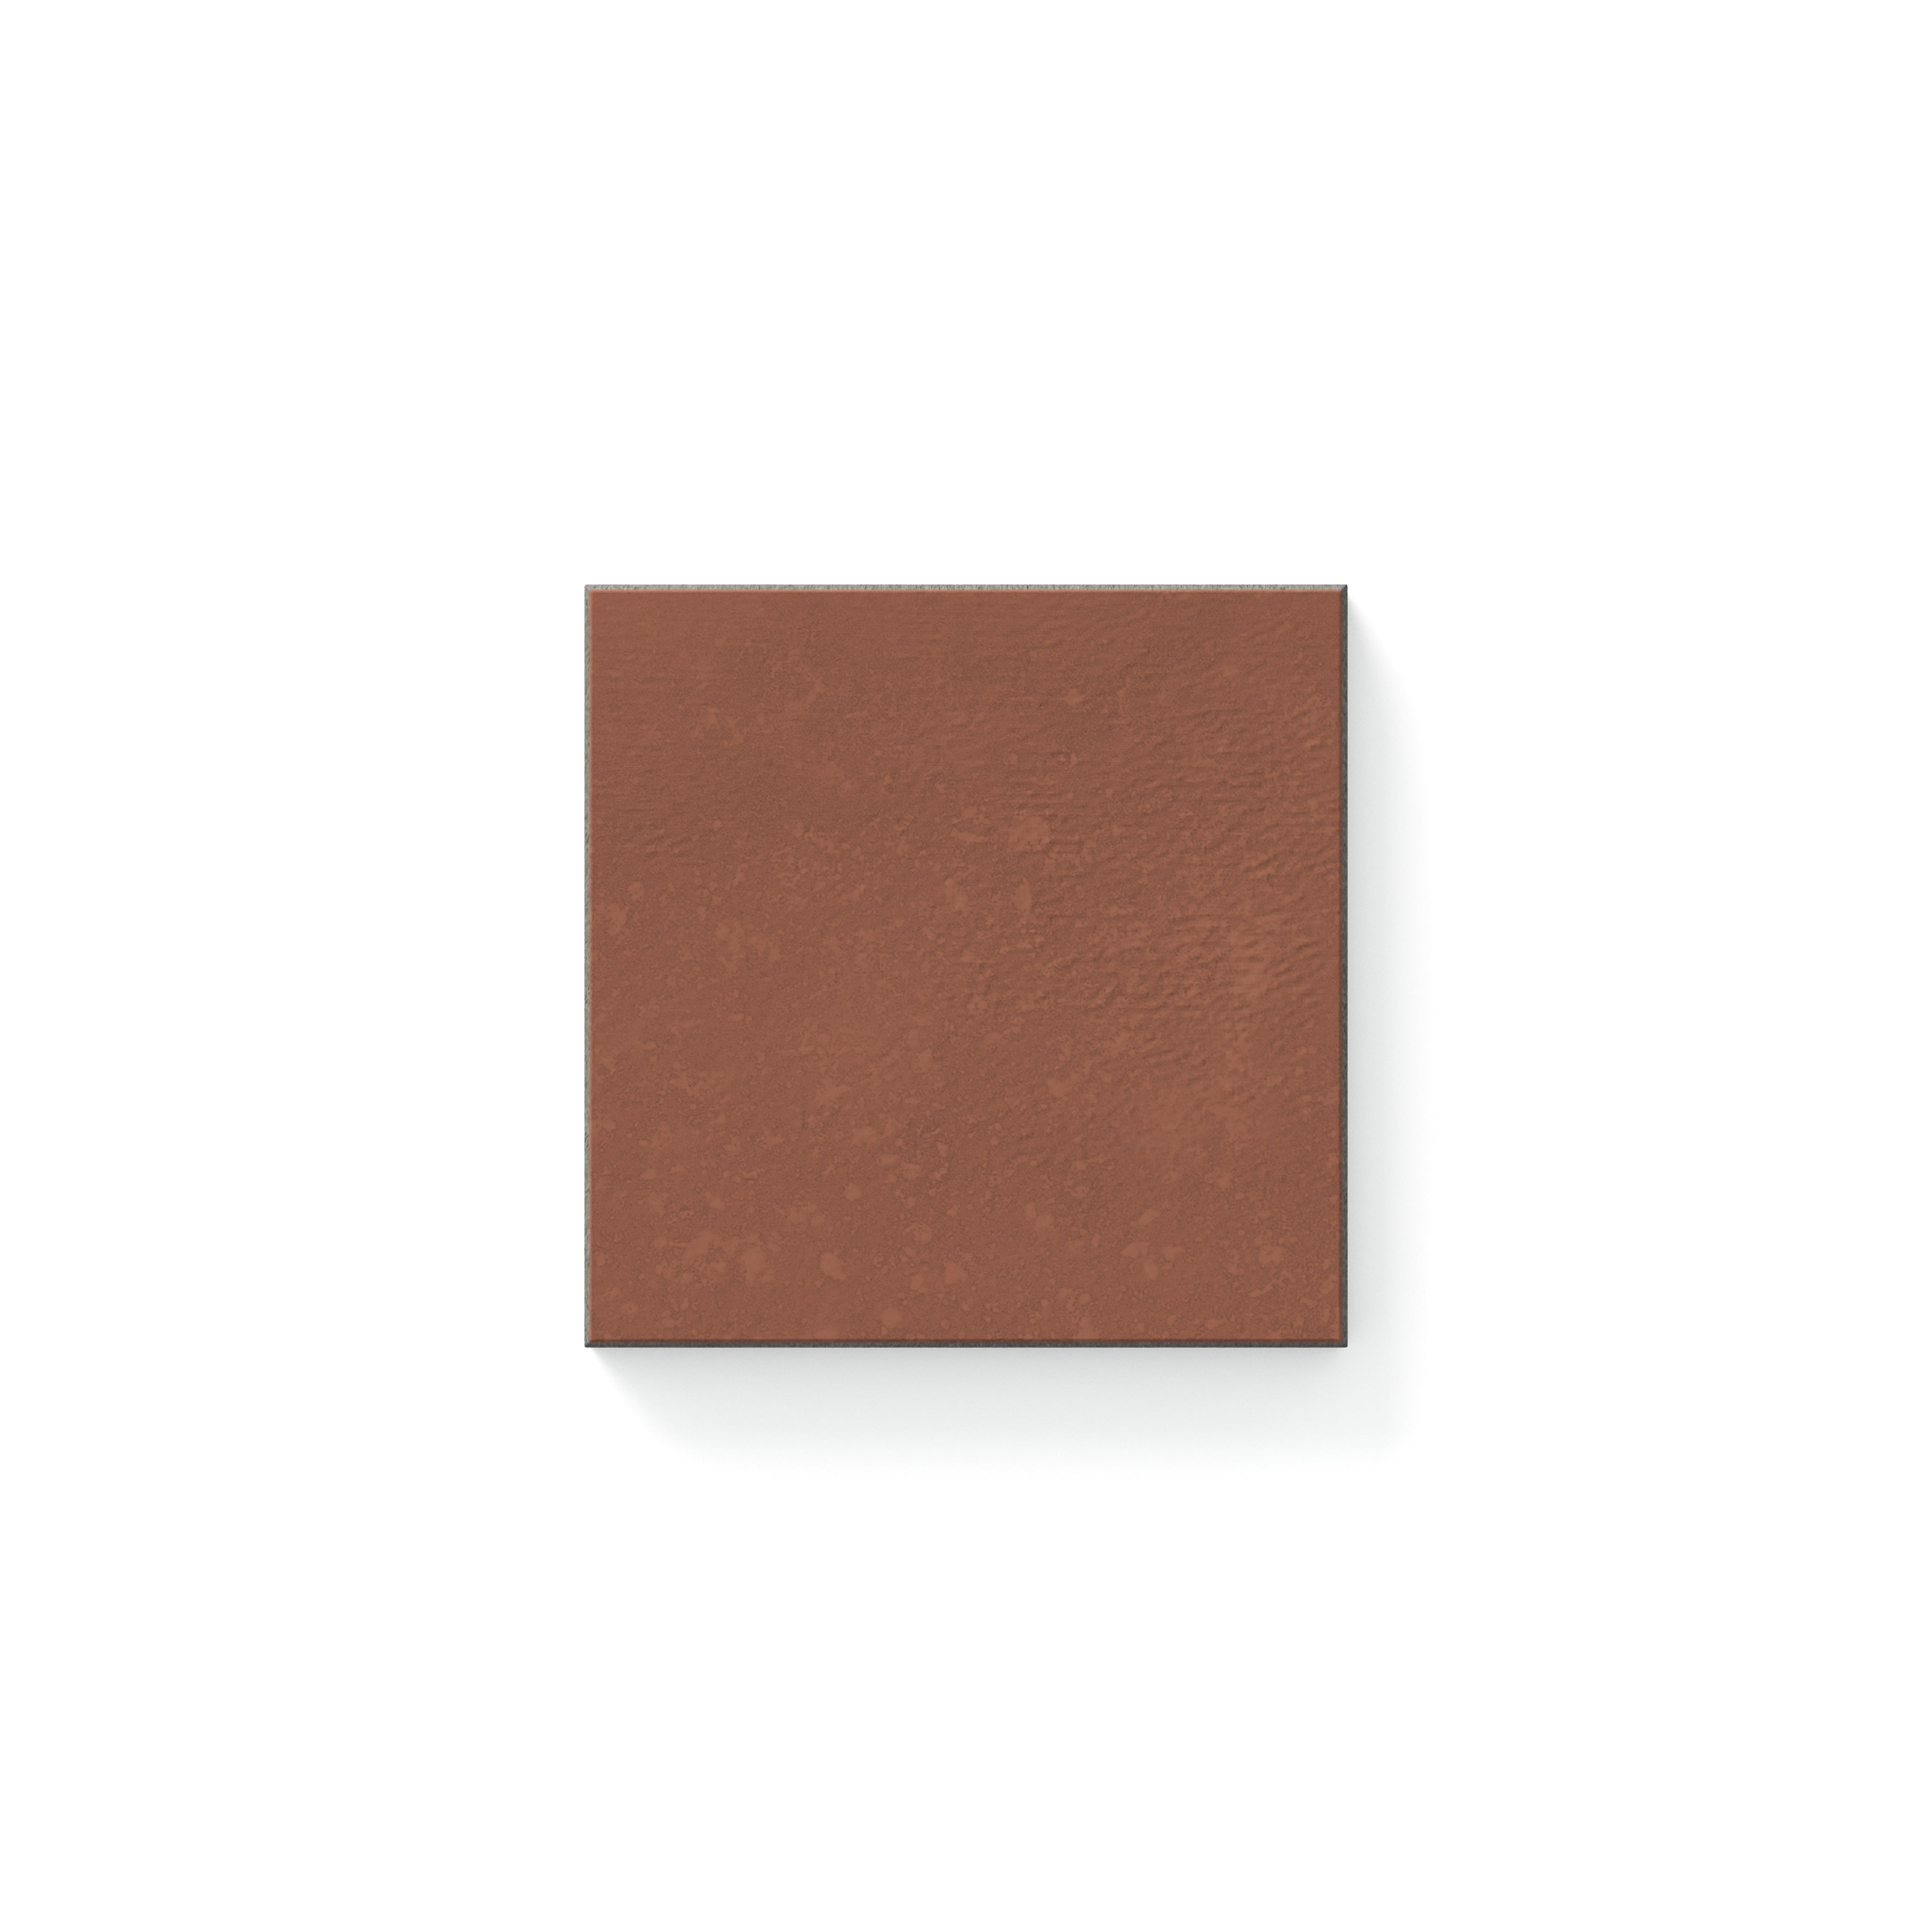 Dax Matte Rust 4x4 Tile Sample